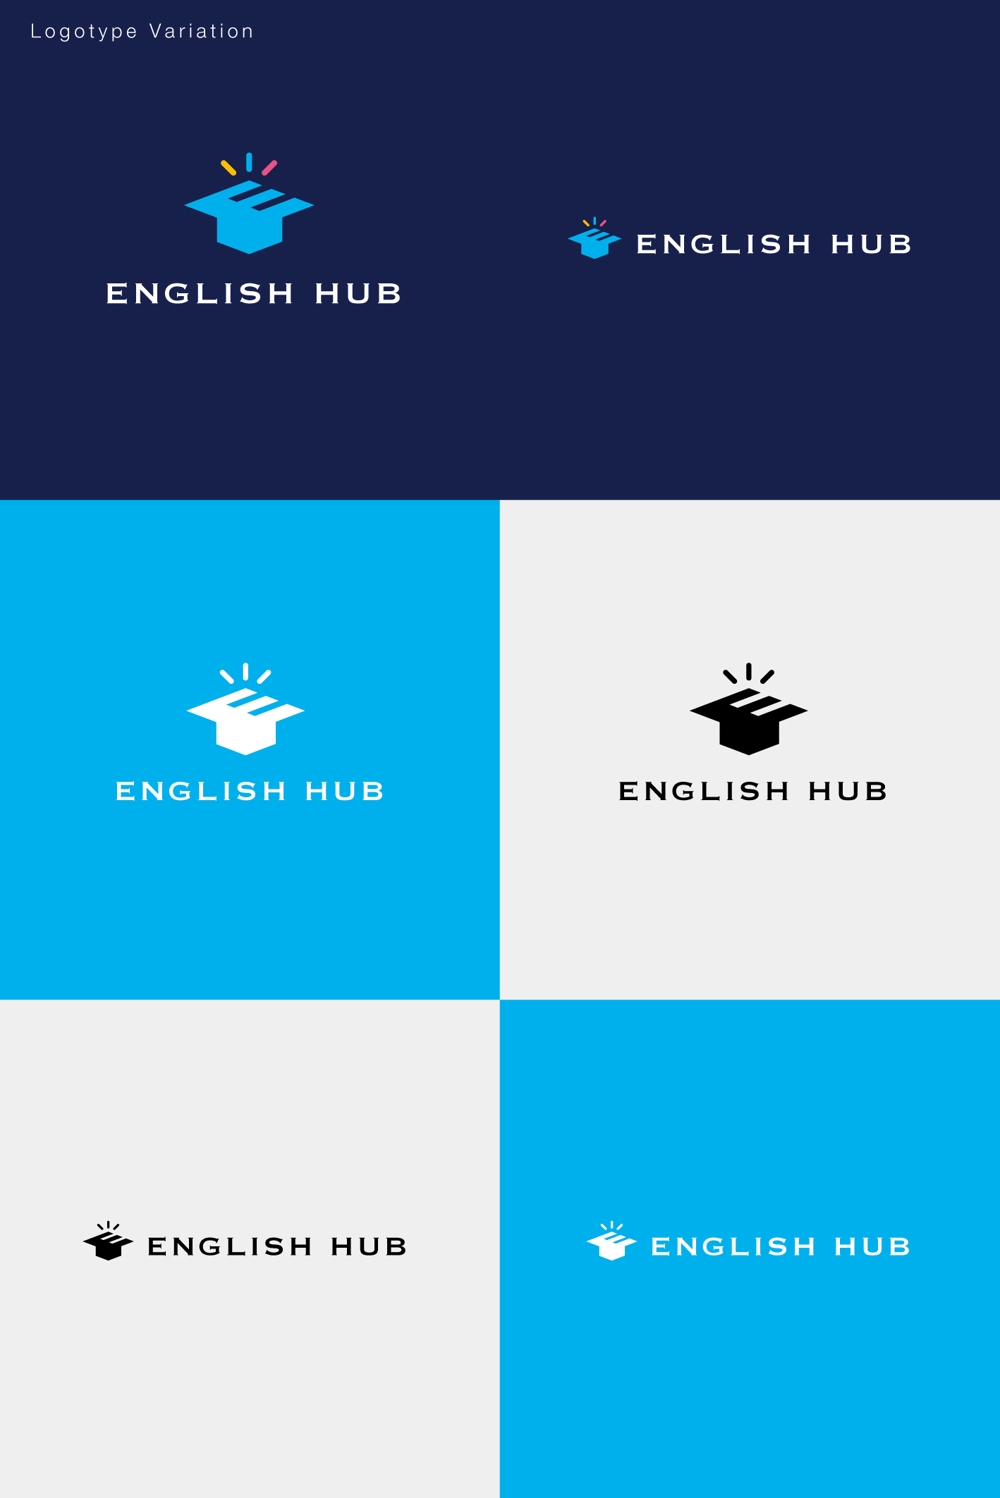 ウェブメディア「English Hub」のロゴ作成のお仕事